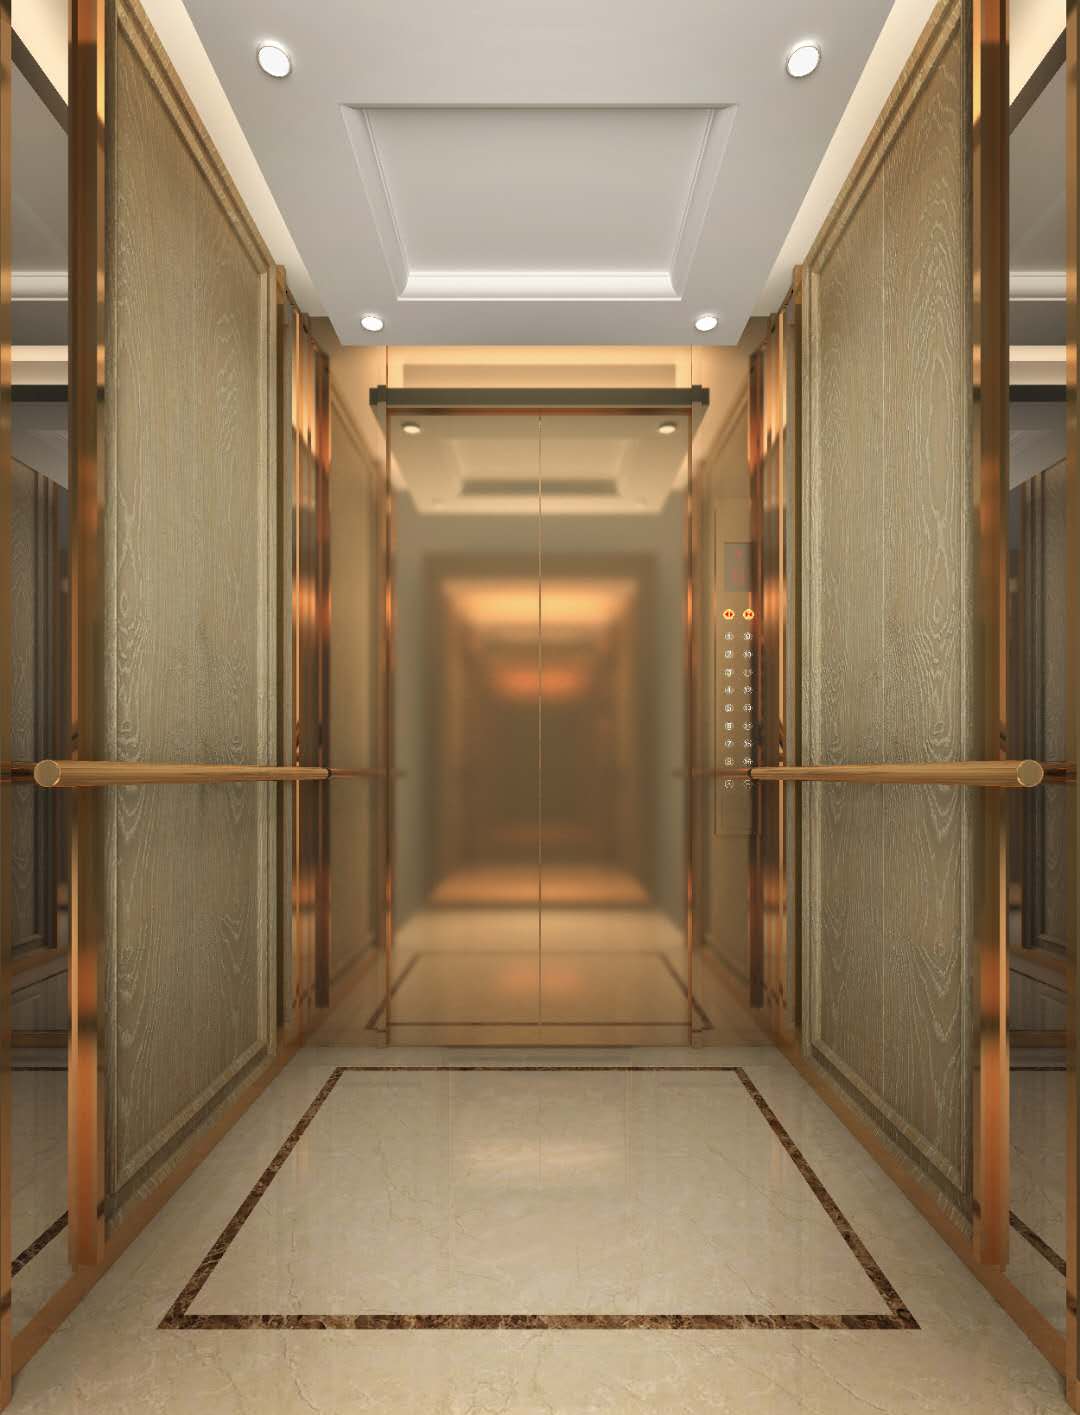 济南酒店电梯装饰扶梯客梯大厦别墅电梯装饰翻新